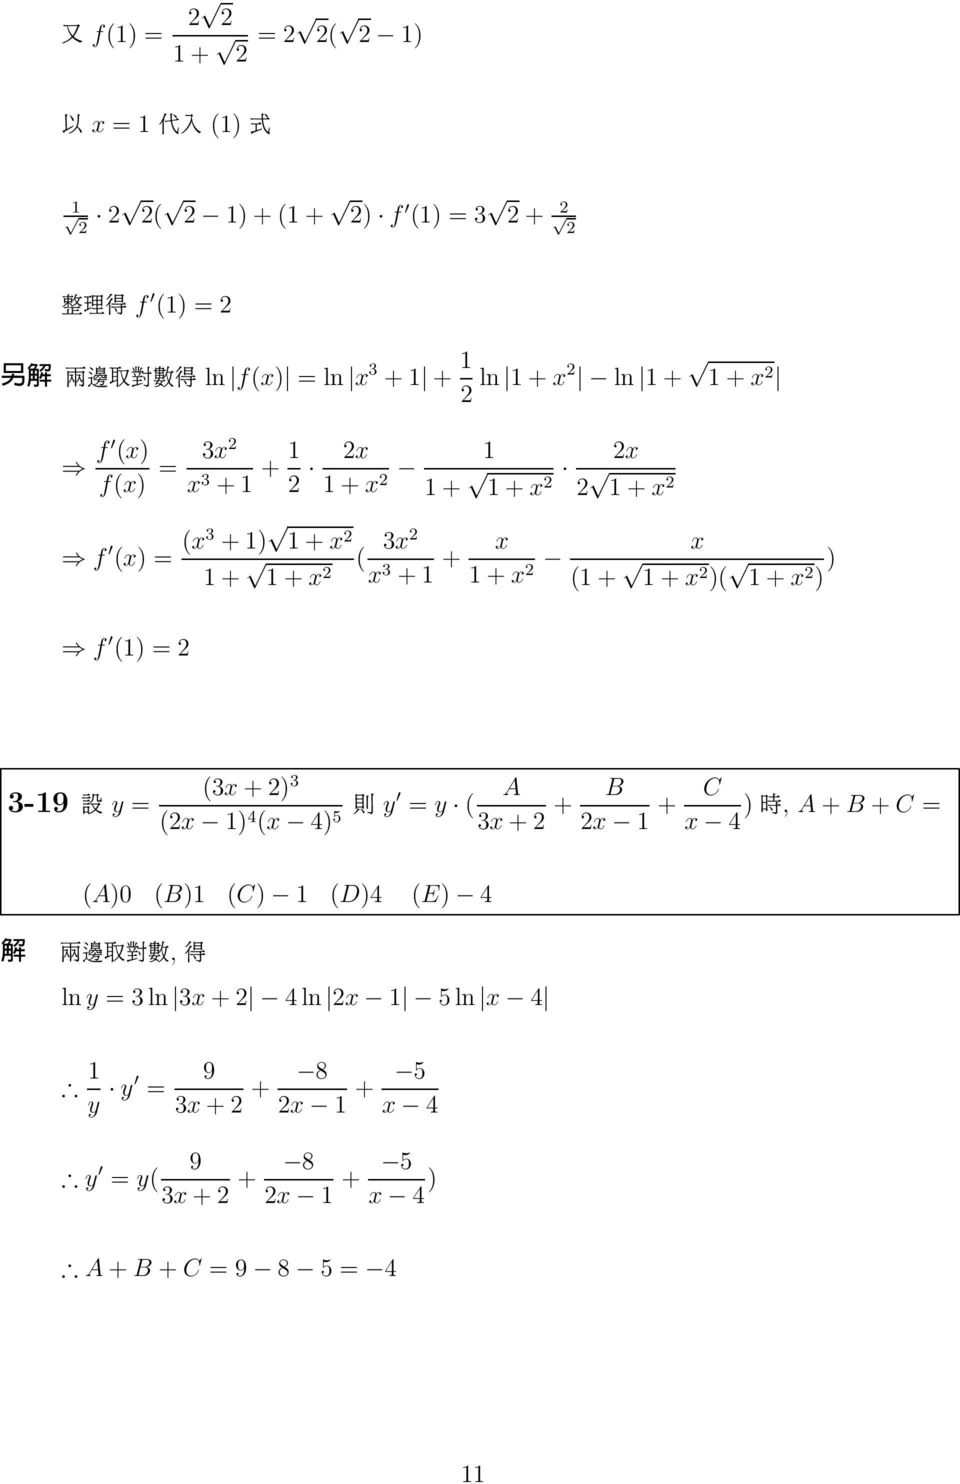 3-9 q y (3x + ) 3 (x ) 4 (x 4) A 5 y y ( 3x + + B x + C x 4 ) v, A + B + C (A)0 (B) (C) (D)4 (E) 4 si